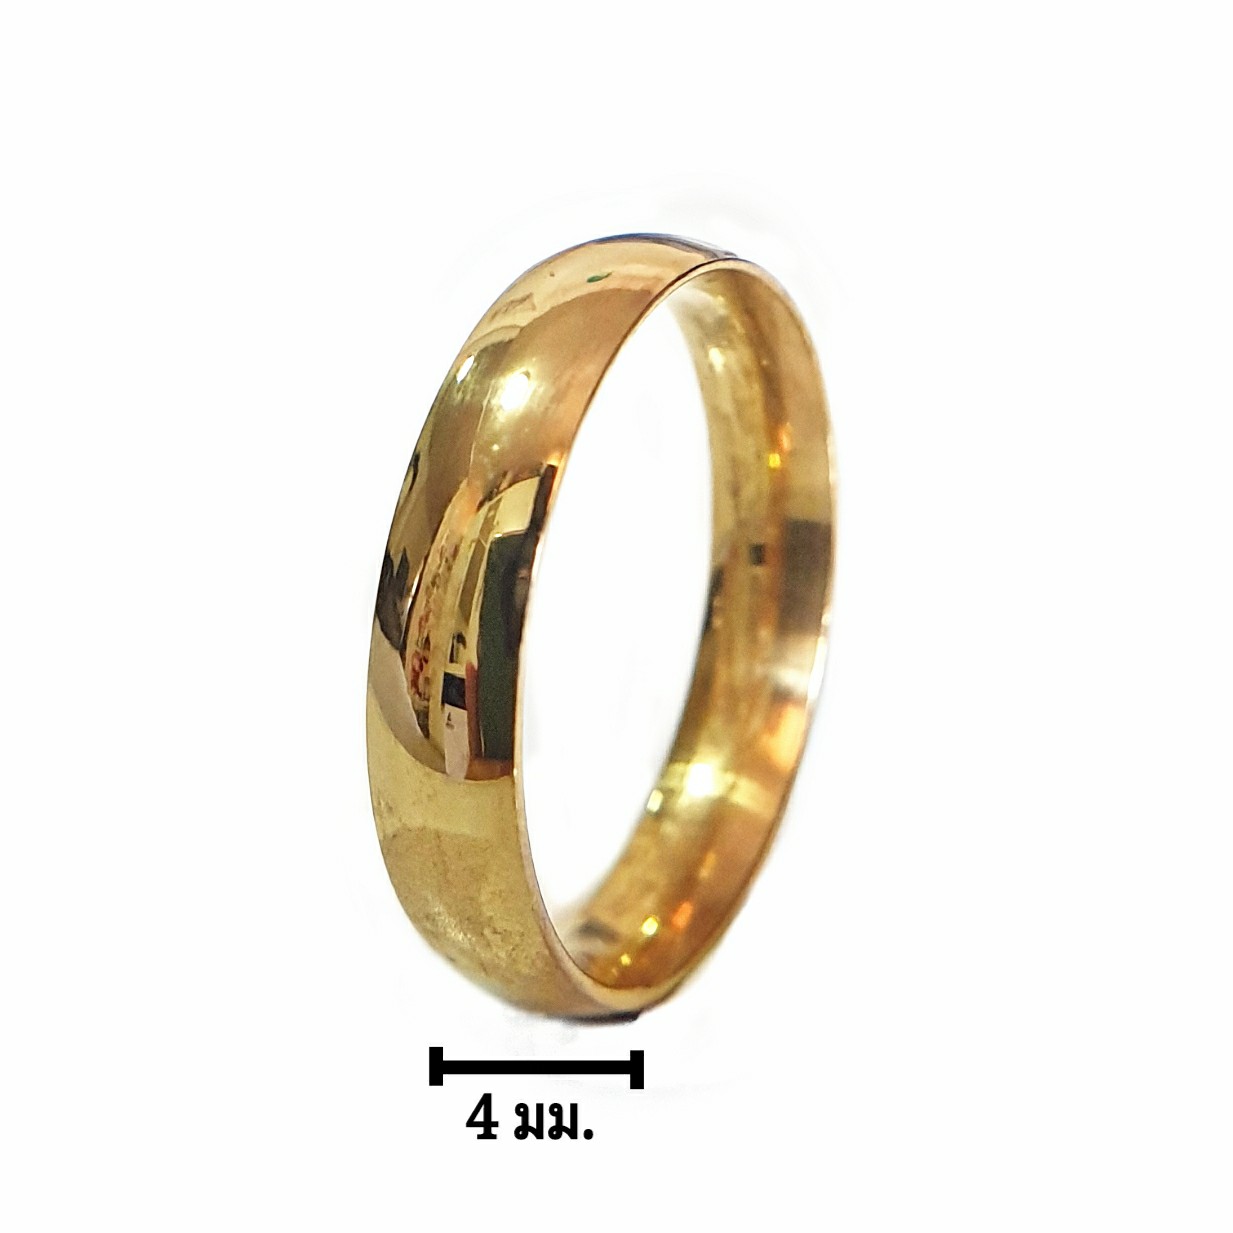 แหวนทองรุ่นเงาใส แหวนปลอกมีด สแตนเลส 18K ทองไม่ลอก ไม่ดำ มีไซส์ใหญ่ 67# ทนทาน ตลอดอายุการใช้งาน แหวนเกลี้ยง